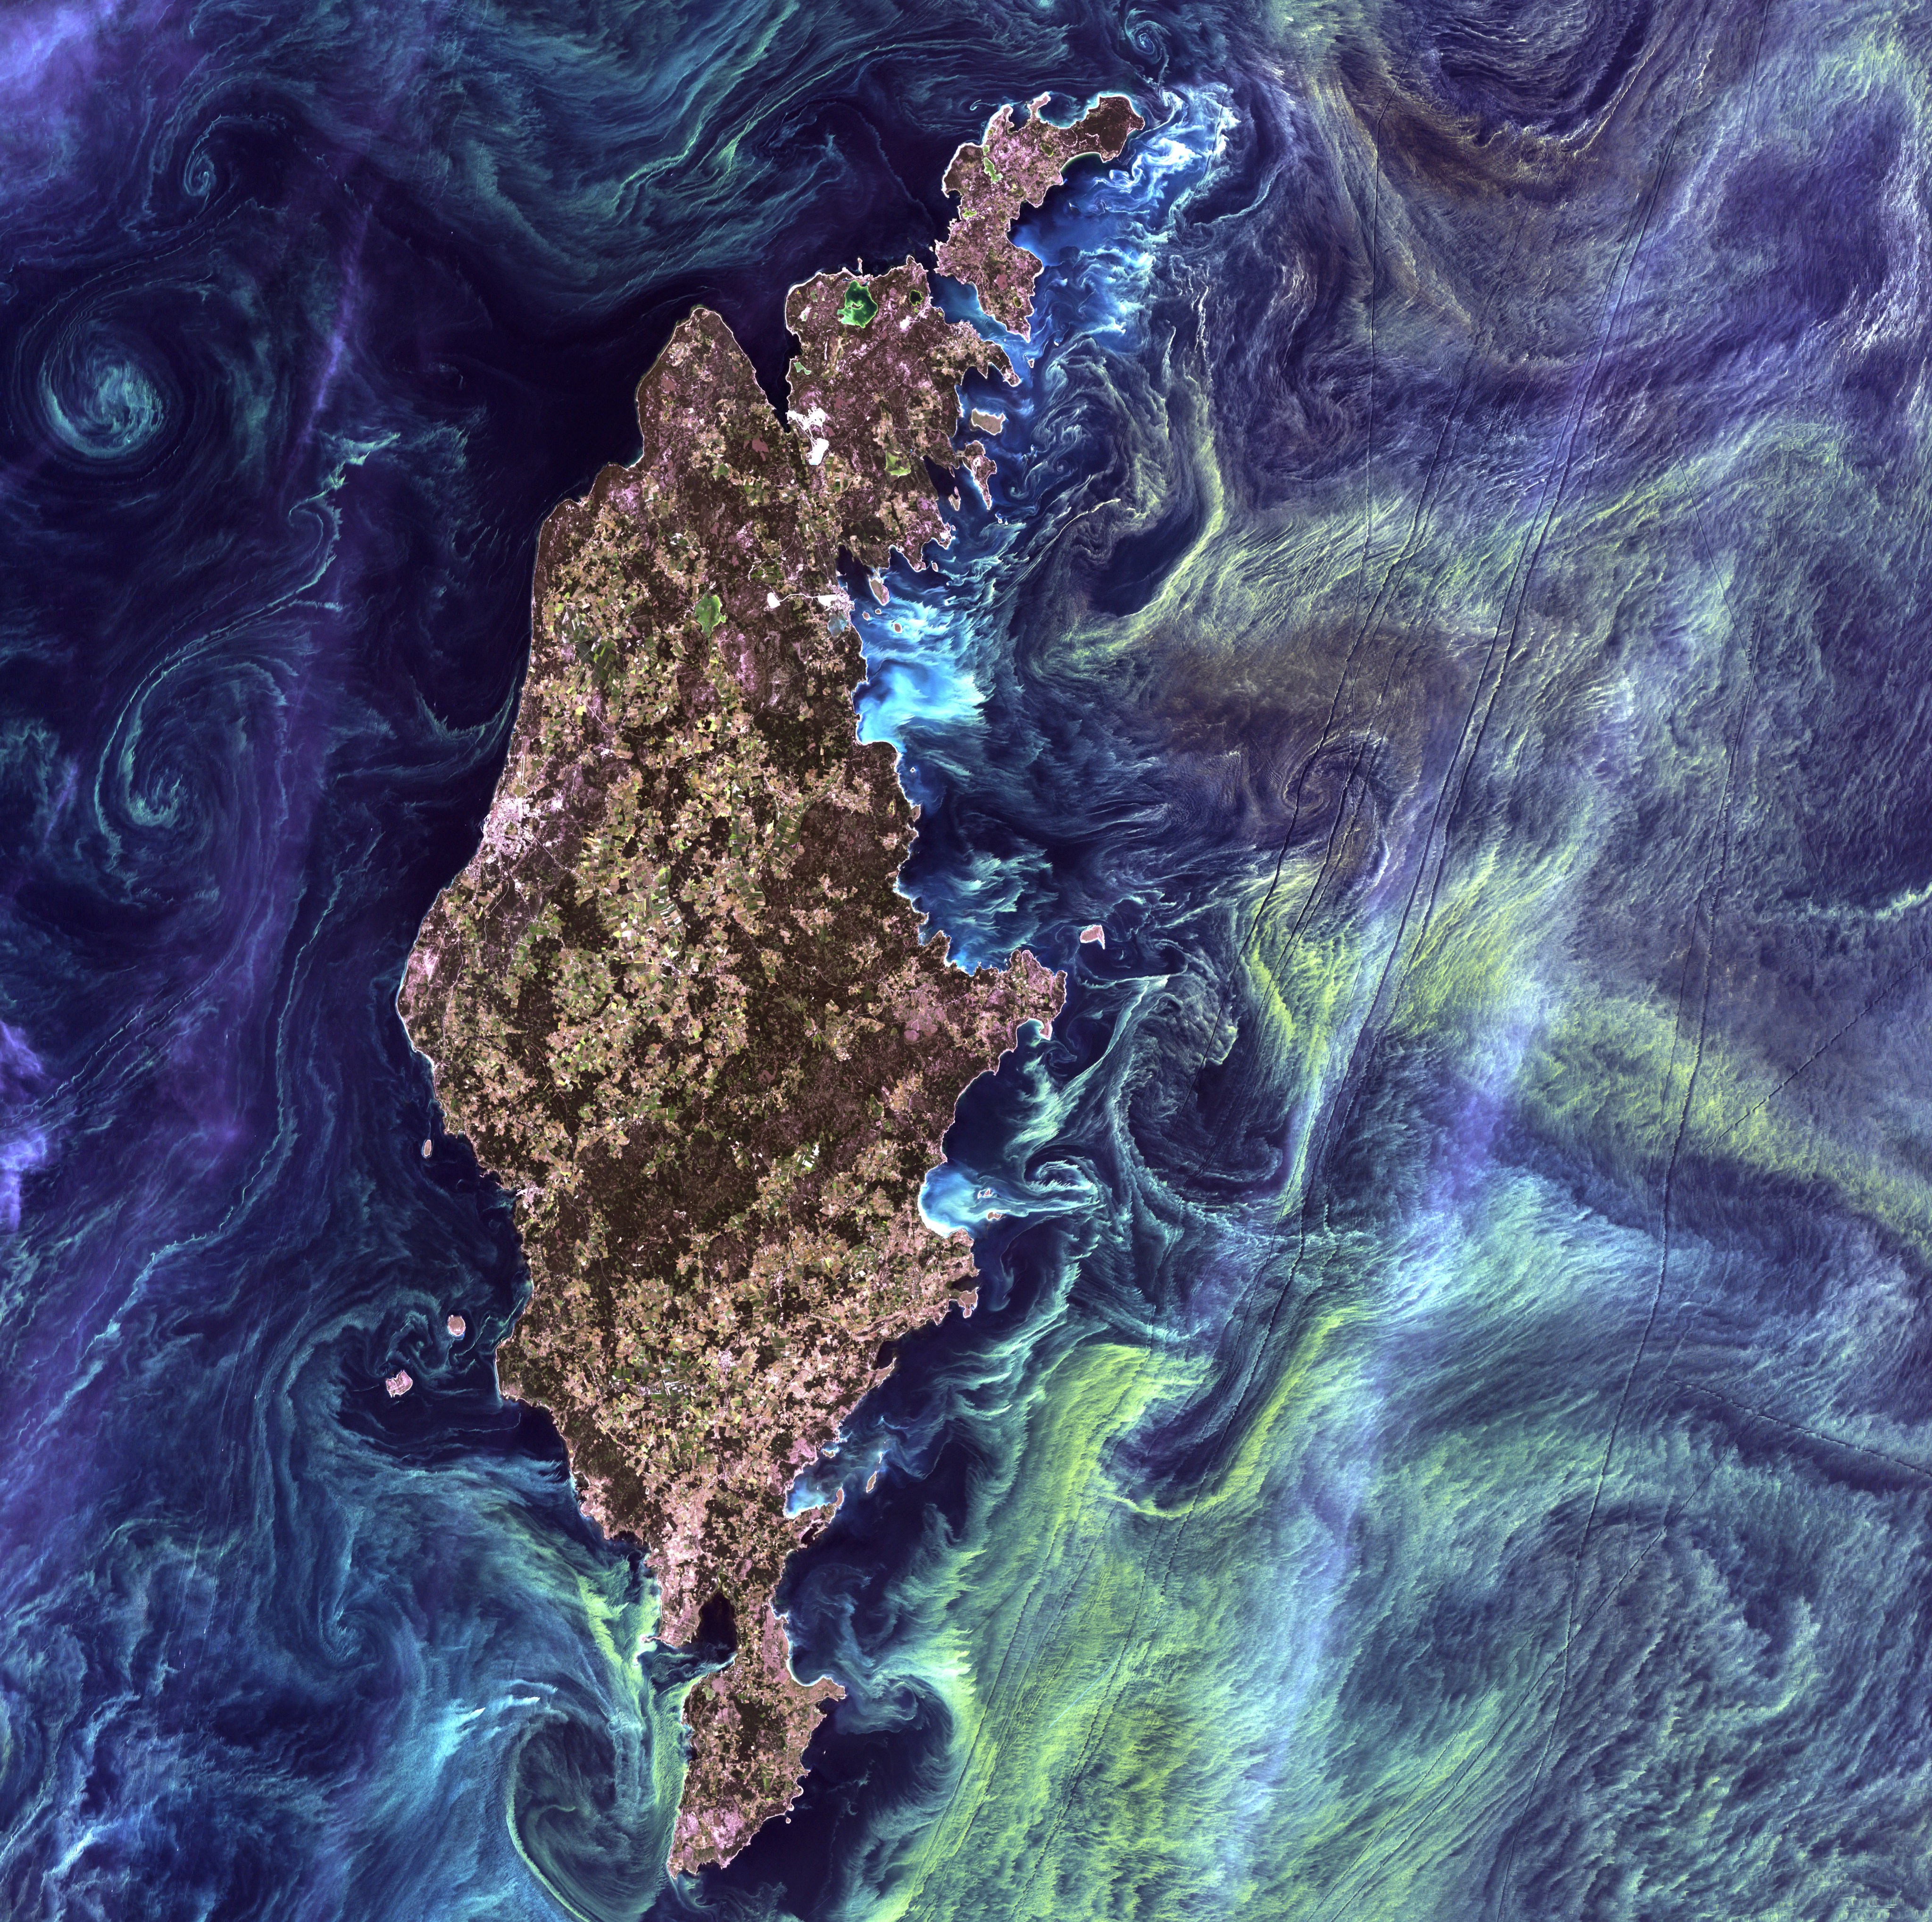 波罗的海中的瑞典岛屿哥特兰周围的黑水中，大片绿色的浮游植物在漩涡中翻腾。来自陆地卫星7的图像。